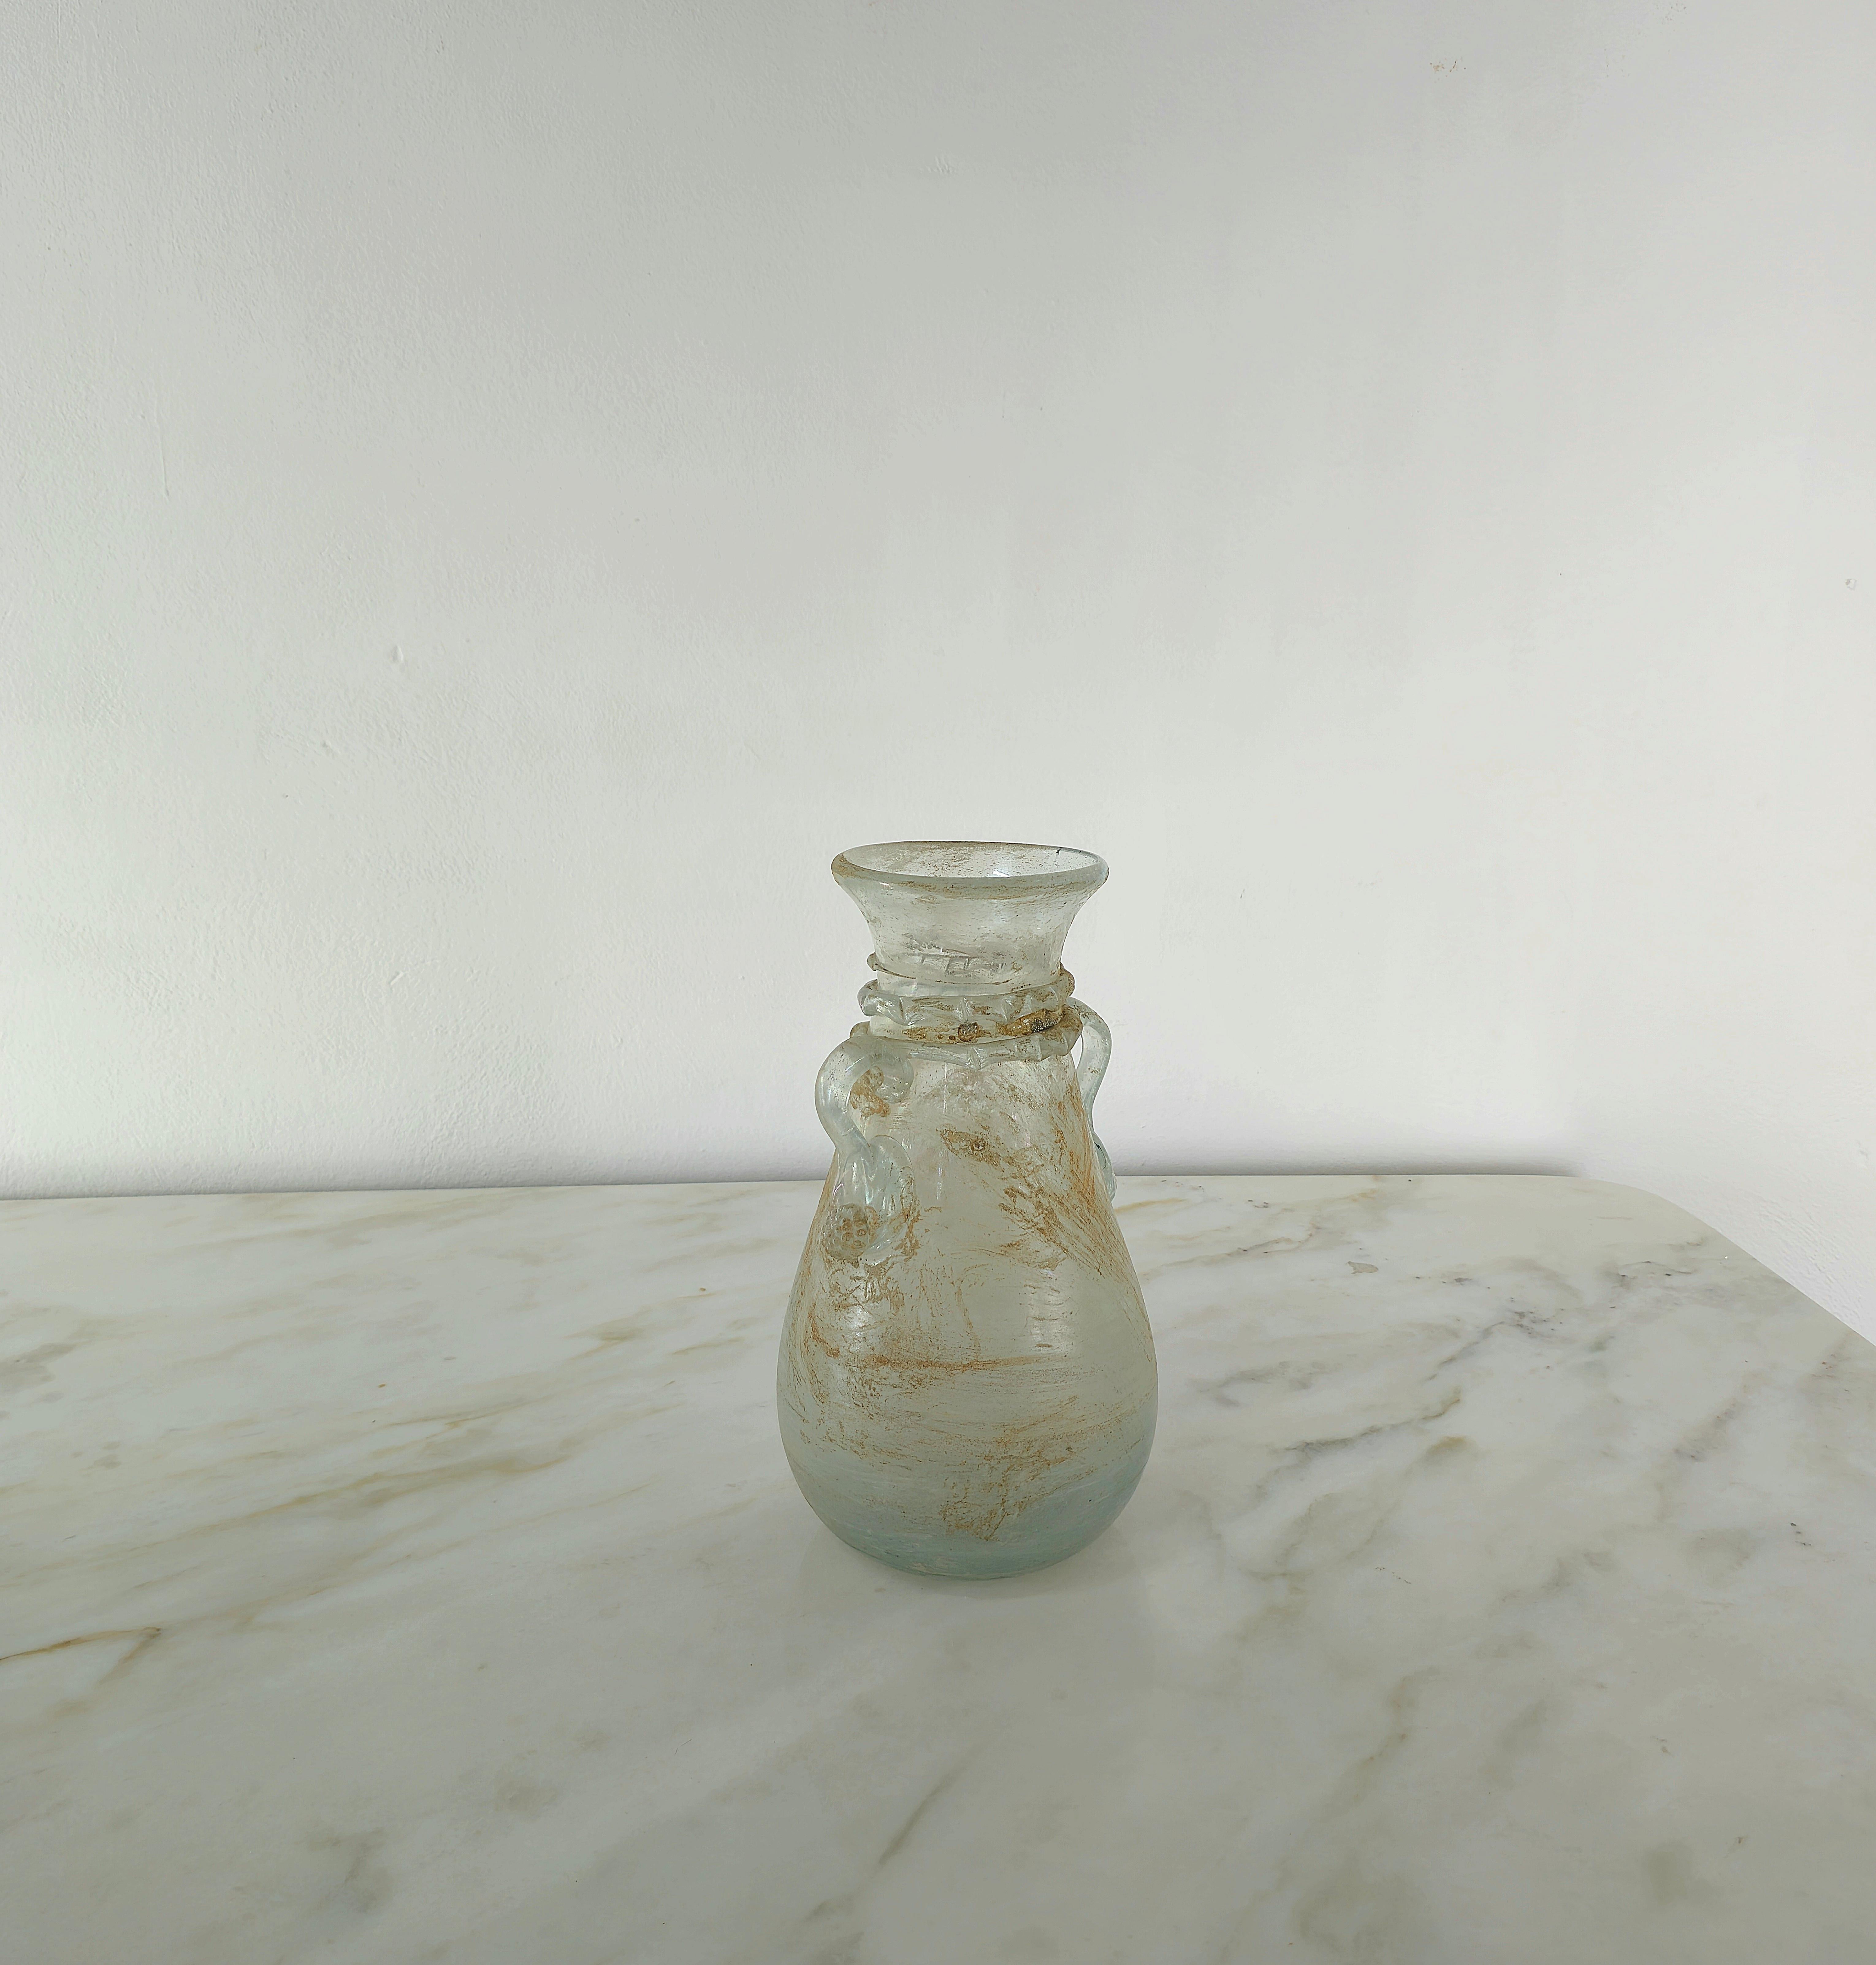 Vase, die der berühmten Glasmanufaktur Seguso zugeschrieben wird und in den 1960er Jahren in Italien hergestellt wurde.
Die Vase mit zwei Henkeln wurde aus Scavo Murano-Glas hergestellt, einer Art von Ornamentglas mit einer rauen, mattierten